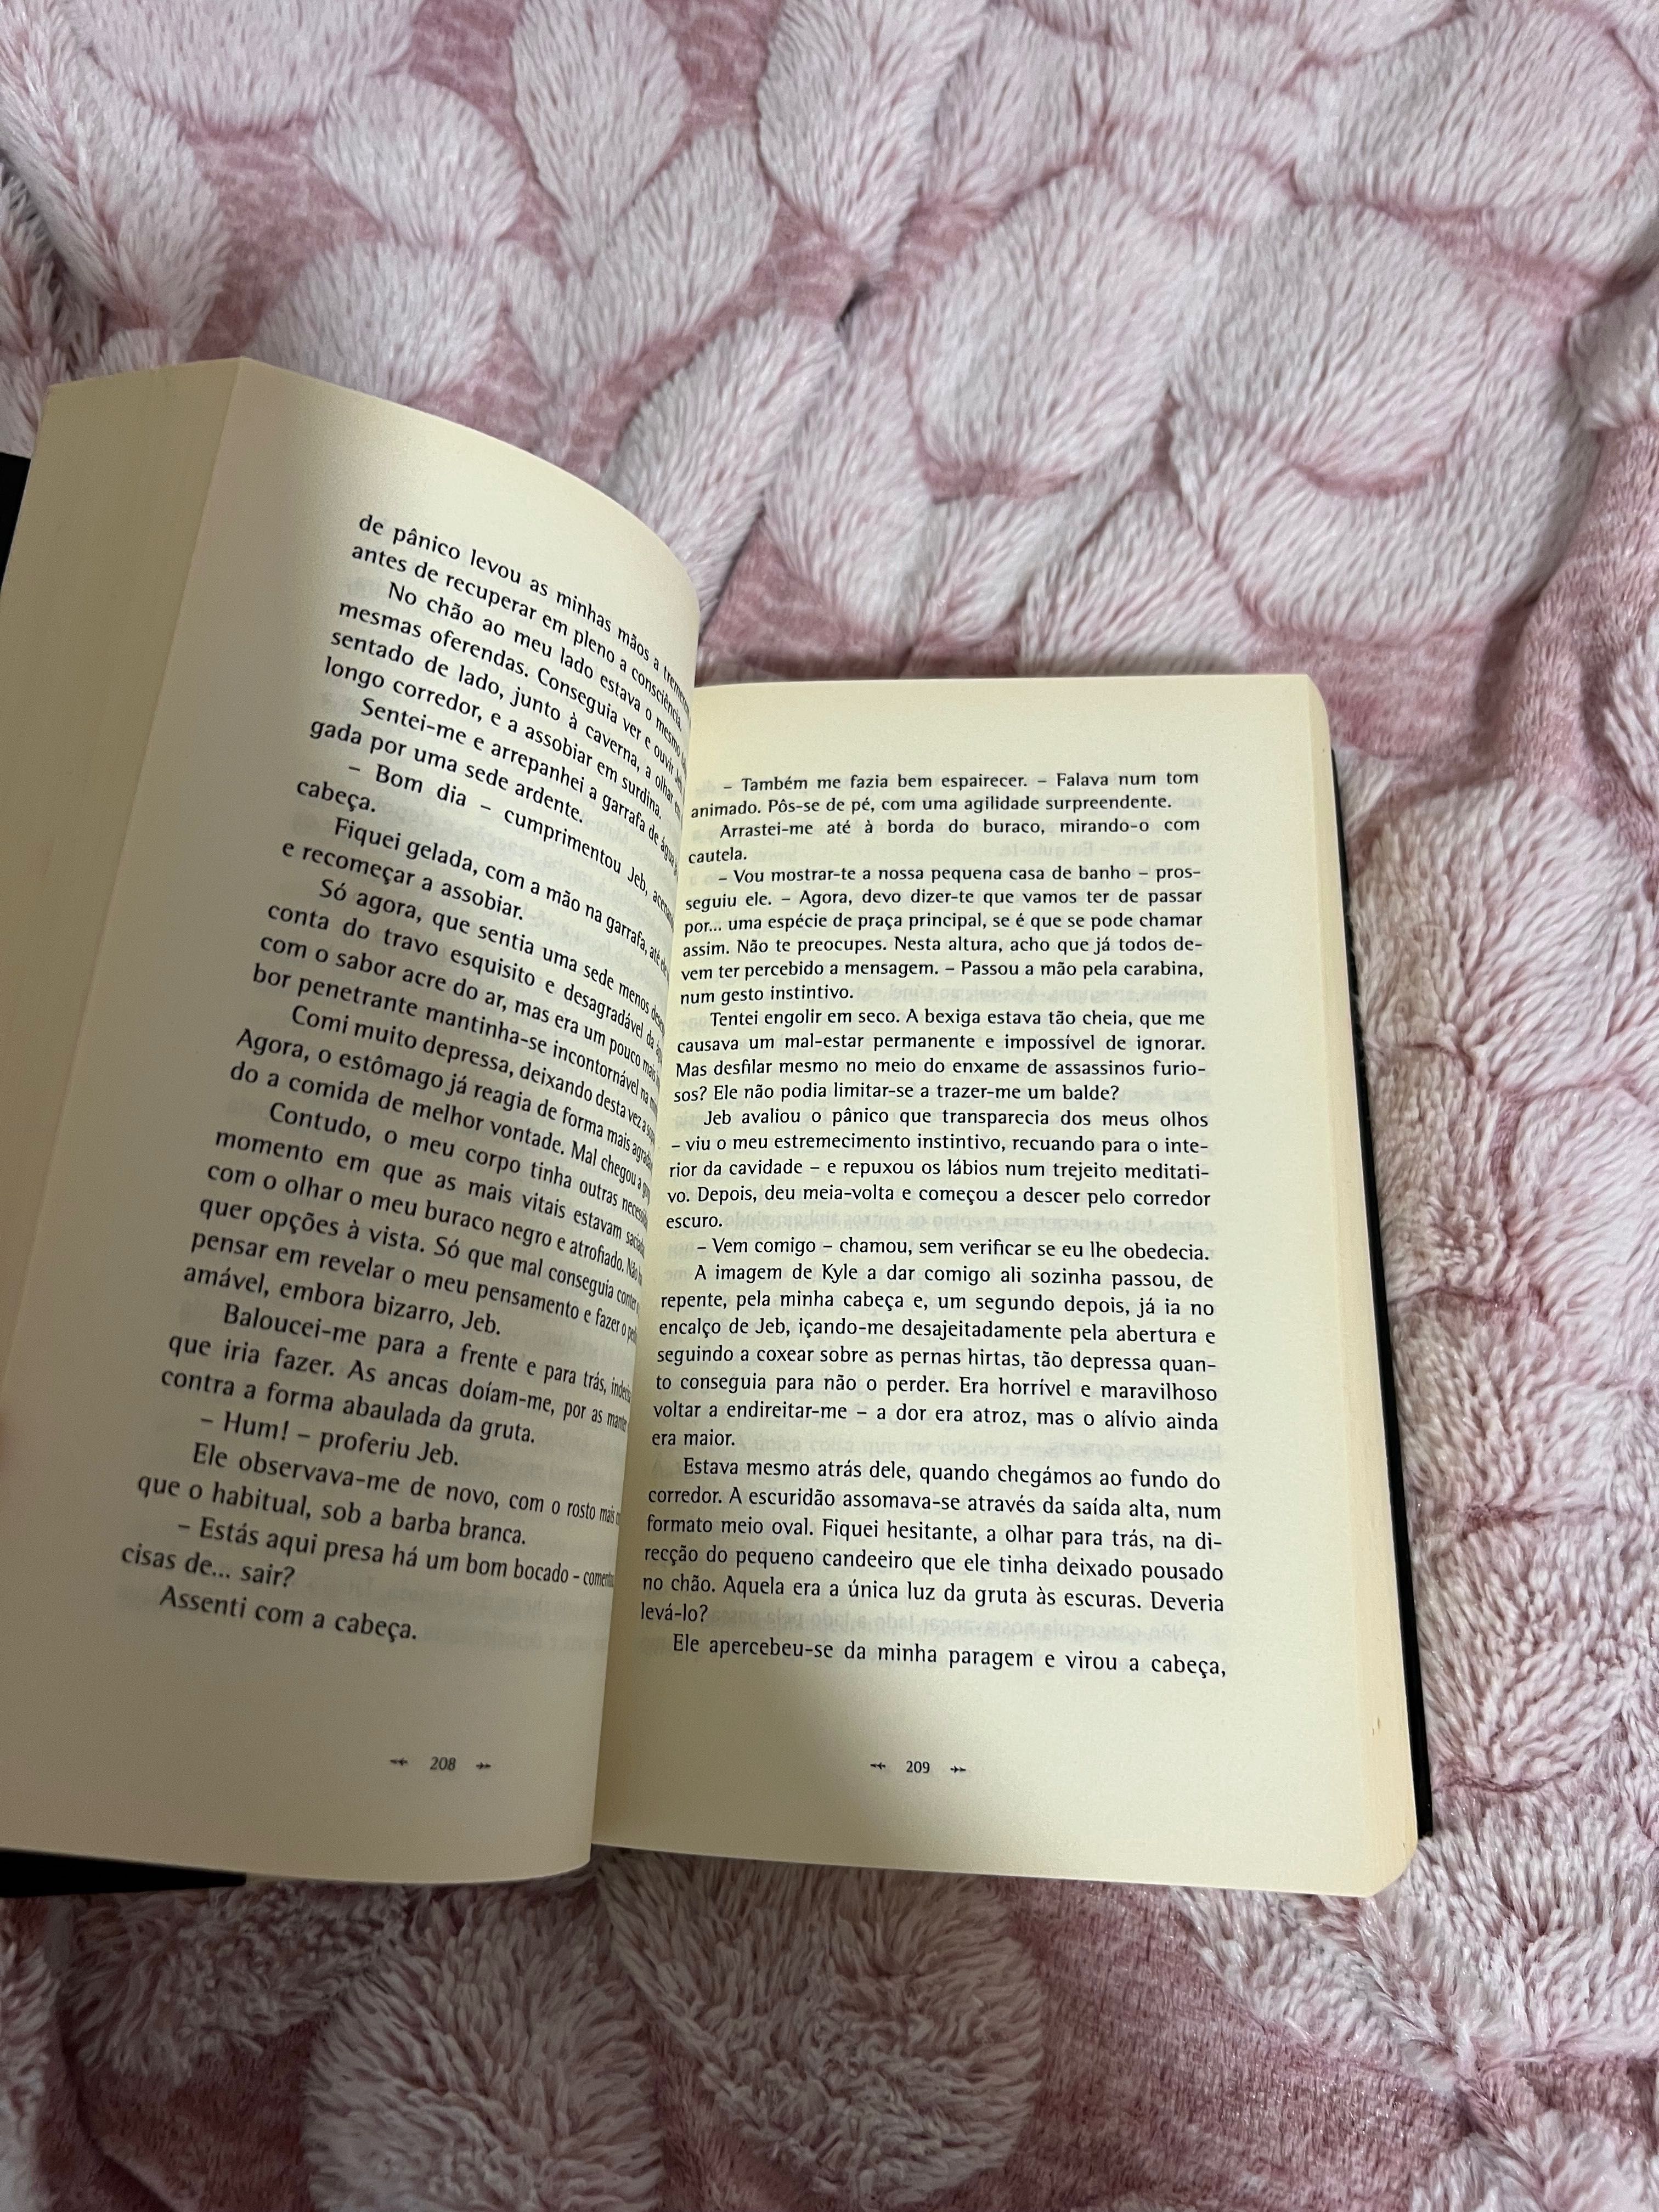 Livro “nómada” de stephanie Mayer